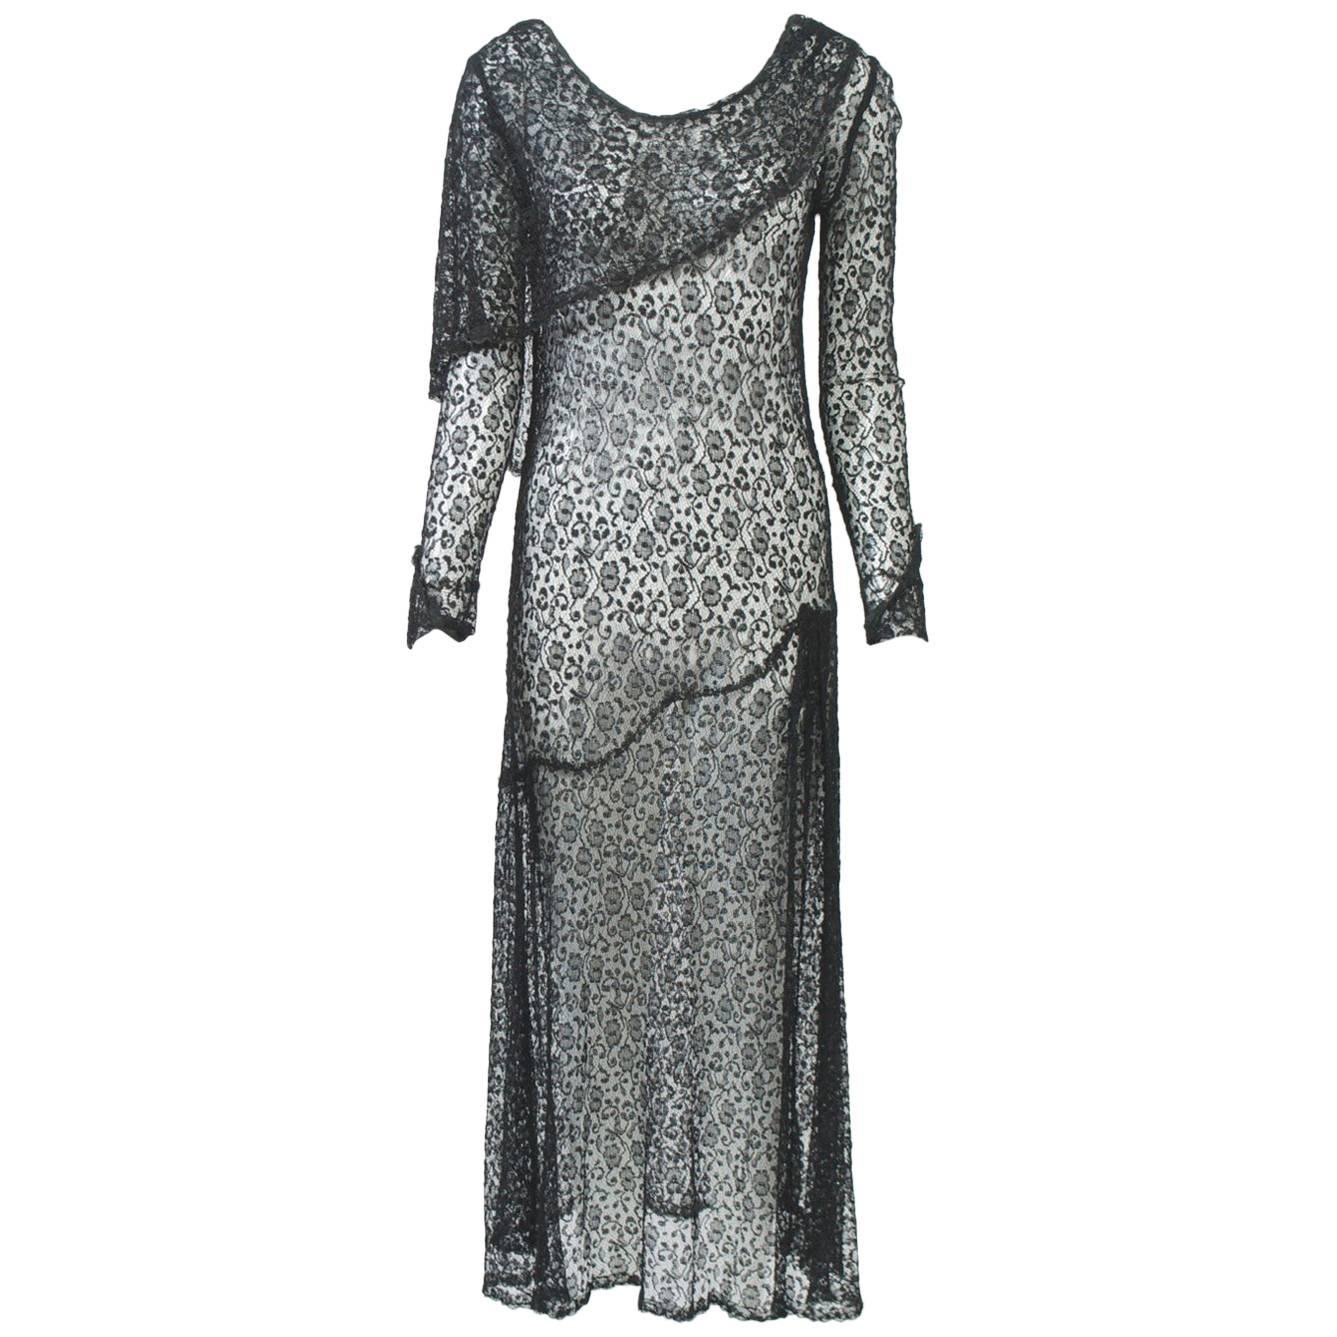 1930s Black Lace Tea Dress For Sale